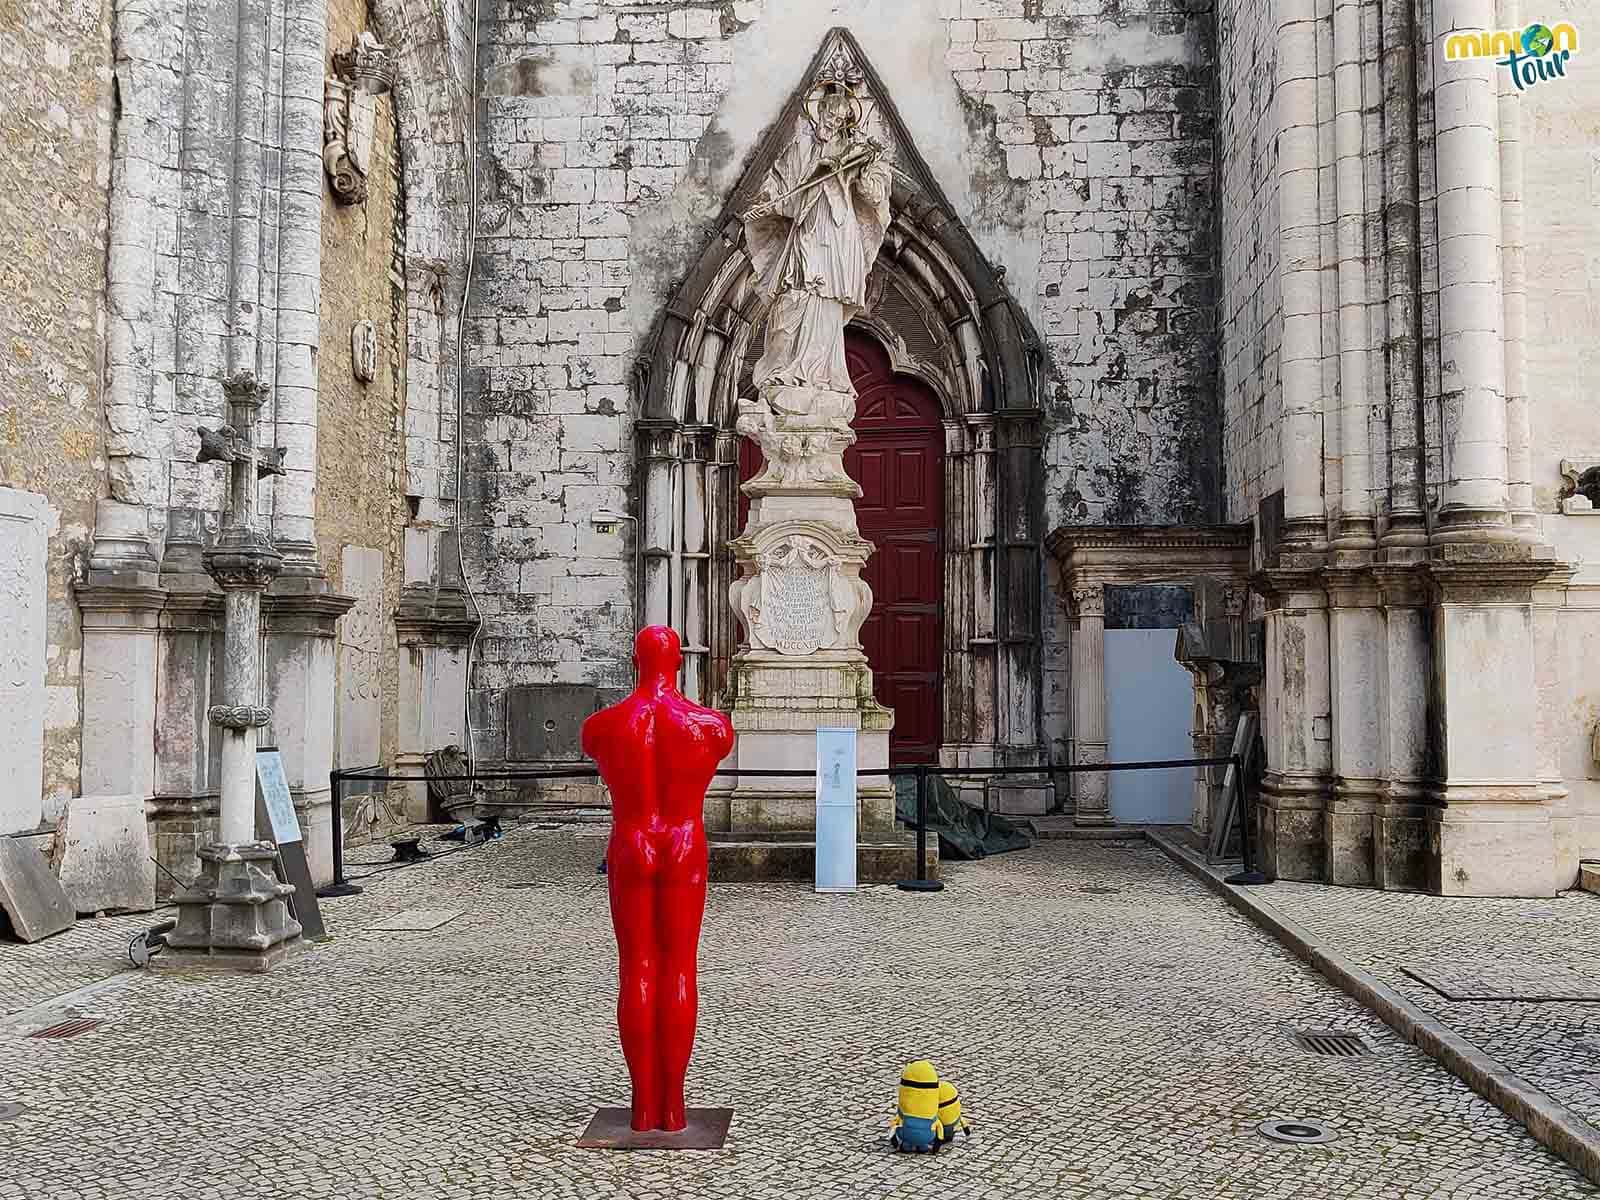 Hemos hecho un amigui de rojo en el Convento do Carmo de Lisboa